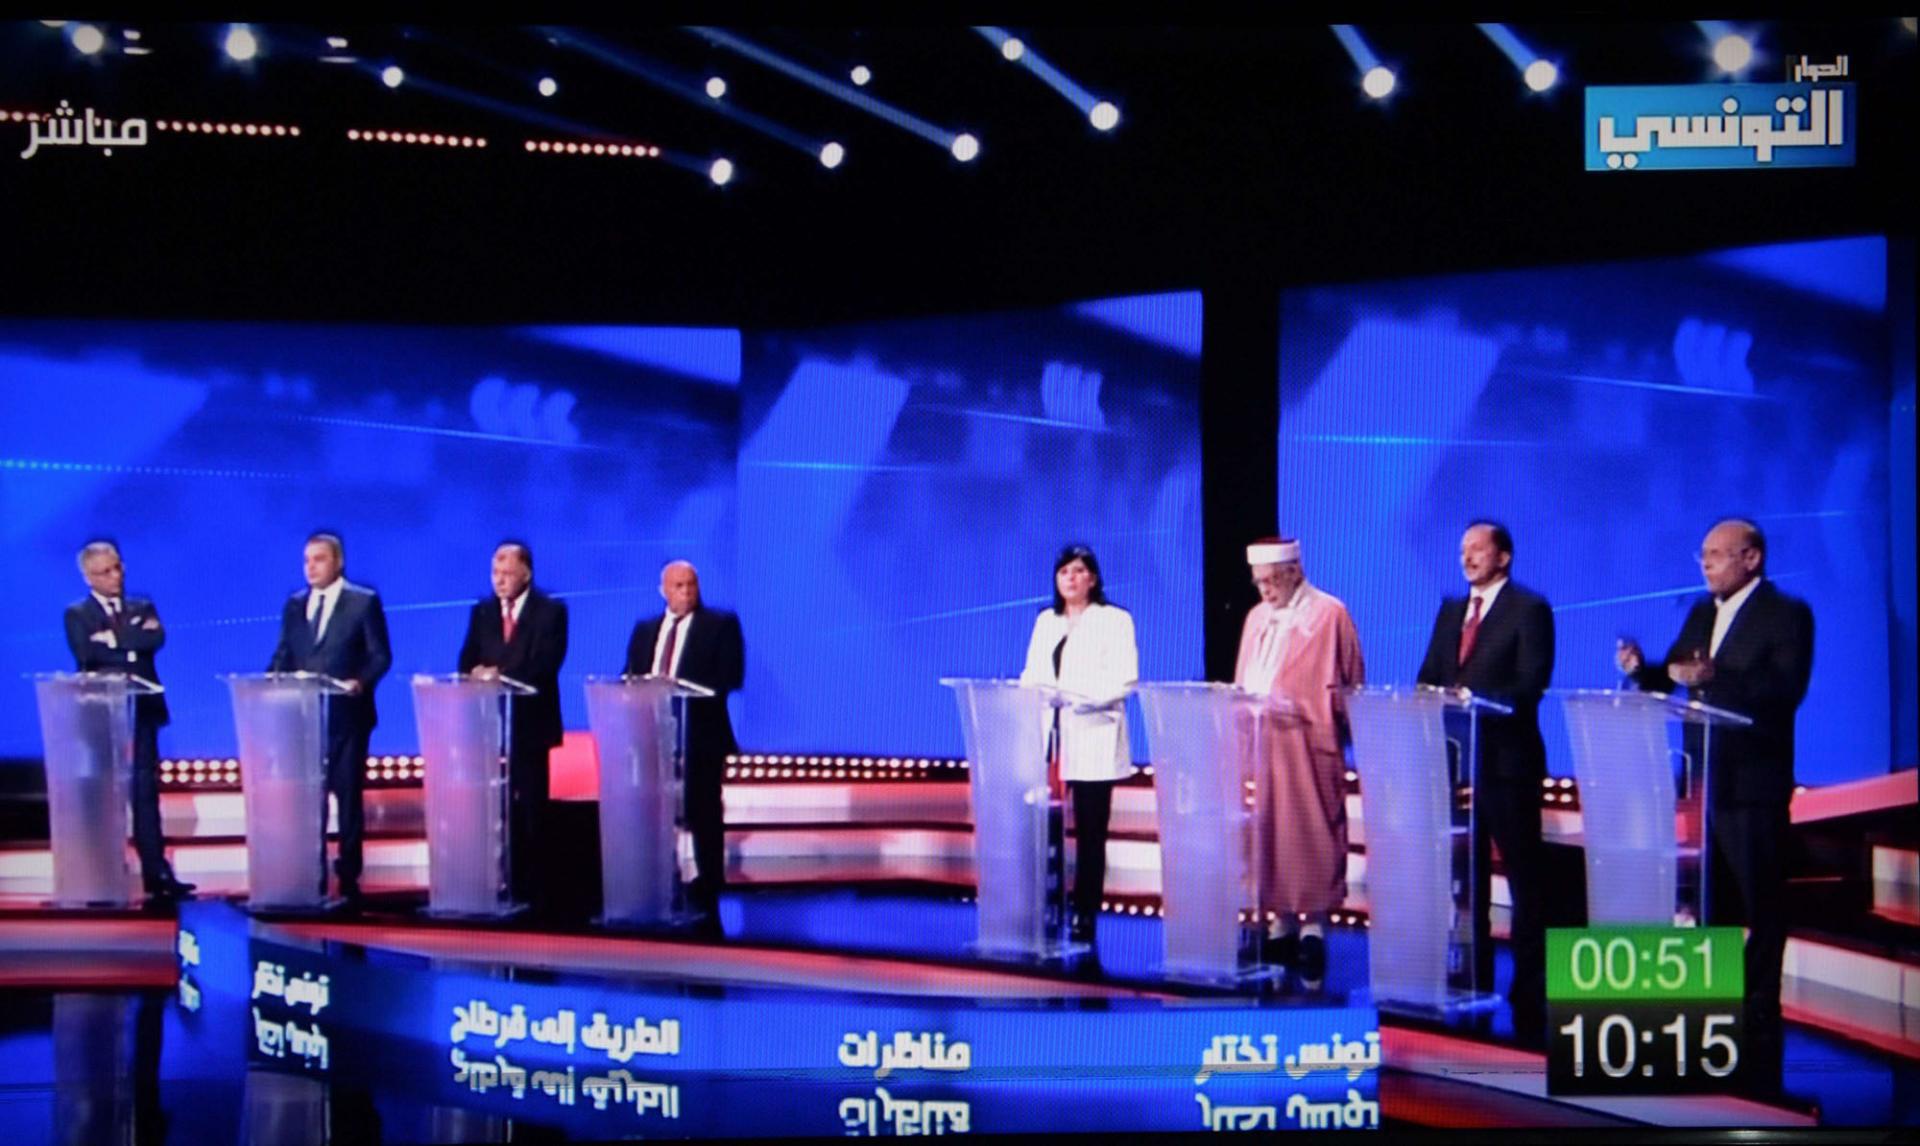 المناظرة التلفزيونية للدور الاول من الانتخابات الرئاسية التونسية